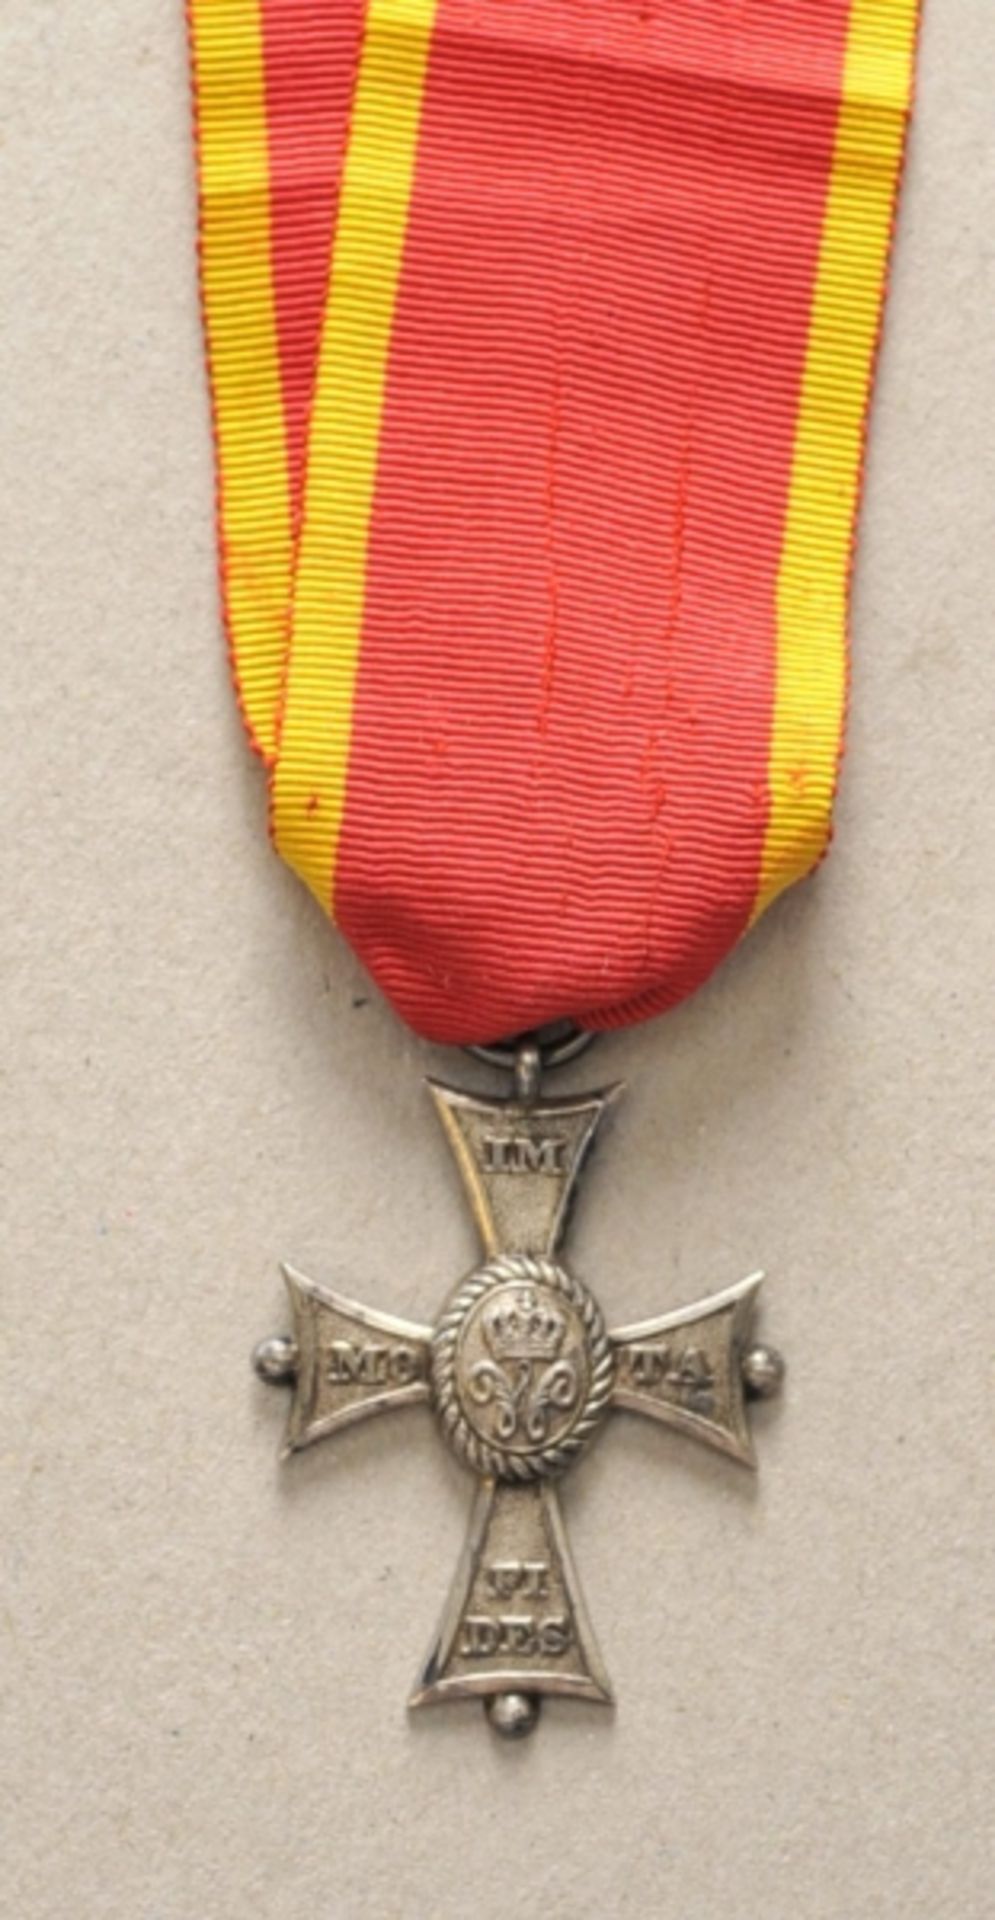 Braunschweig: Orden Heinrichs des Löwen, Verdienstkreuz in Silber.Silber, gepunzte Krone, 900 und S,